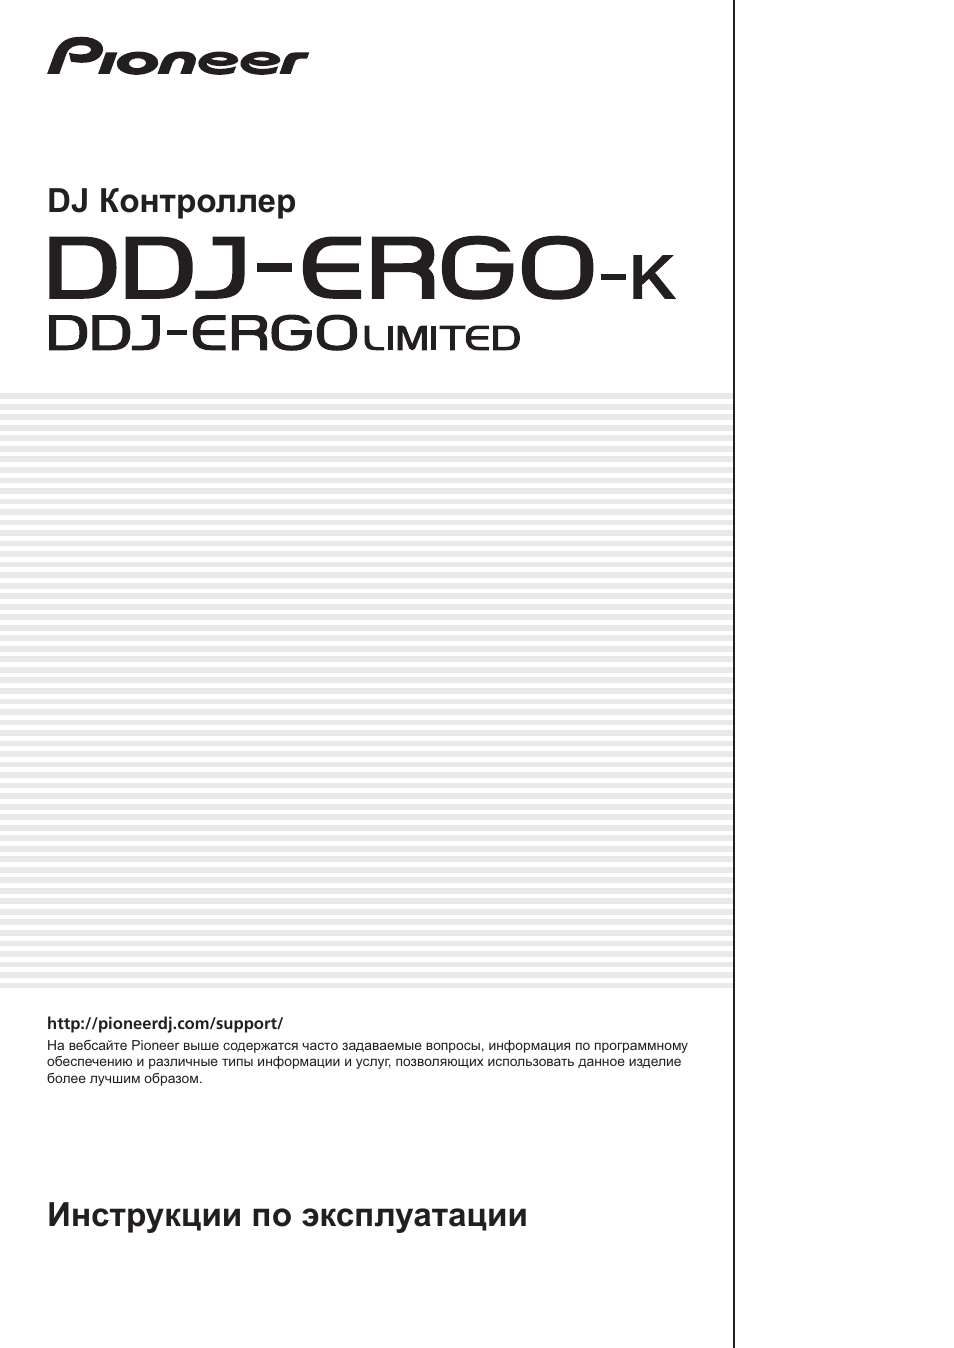 Инструкция по эксплуатации Pioneer DDJ-ERGO-K | 32 страницы